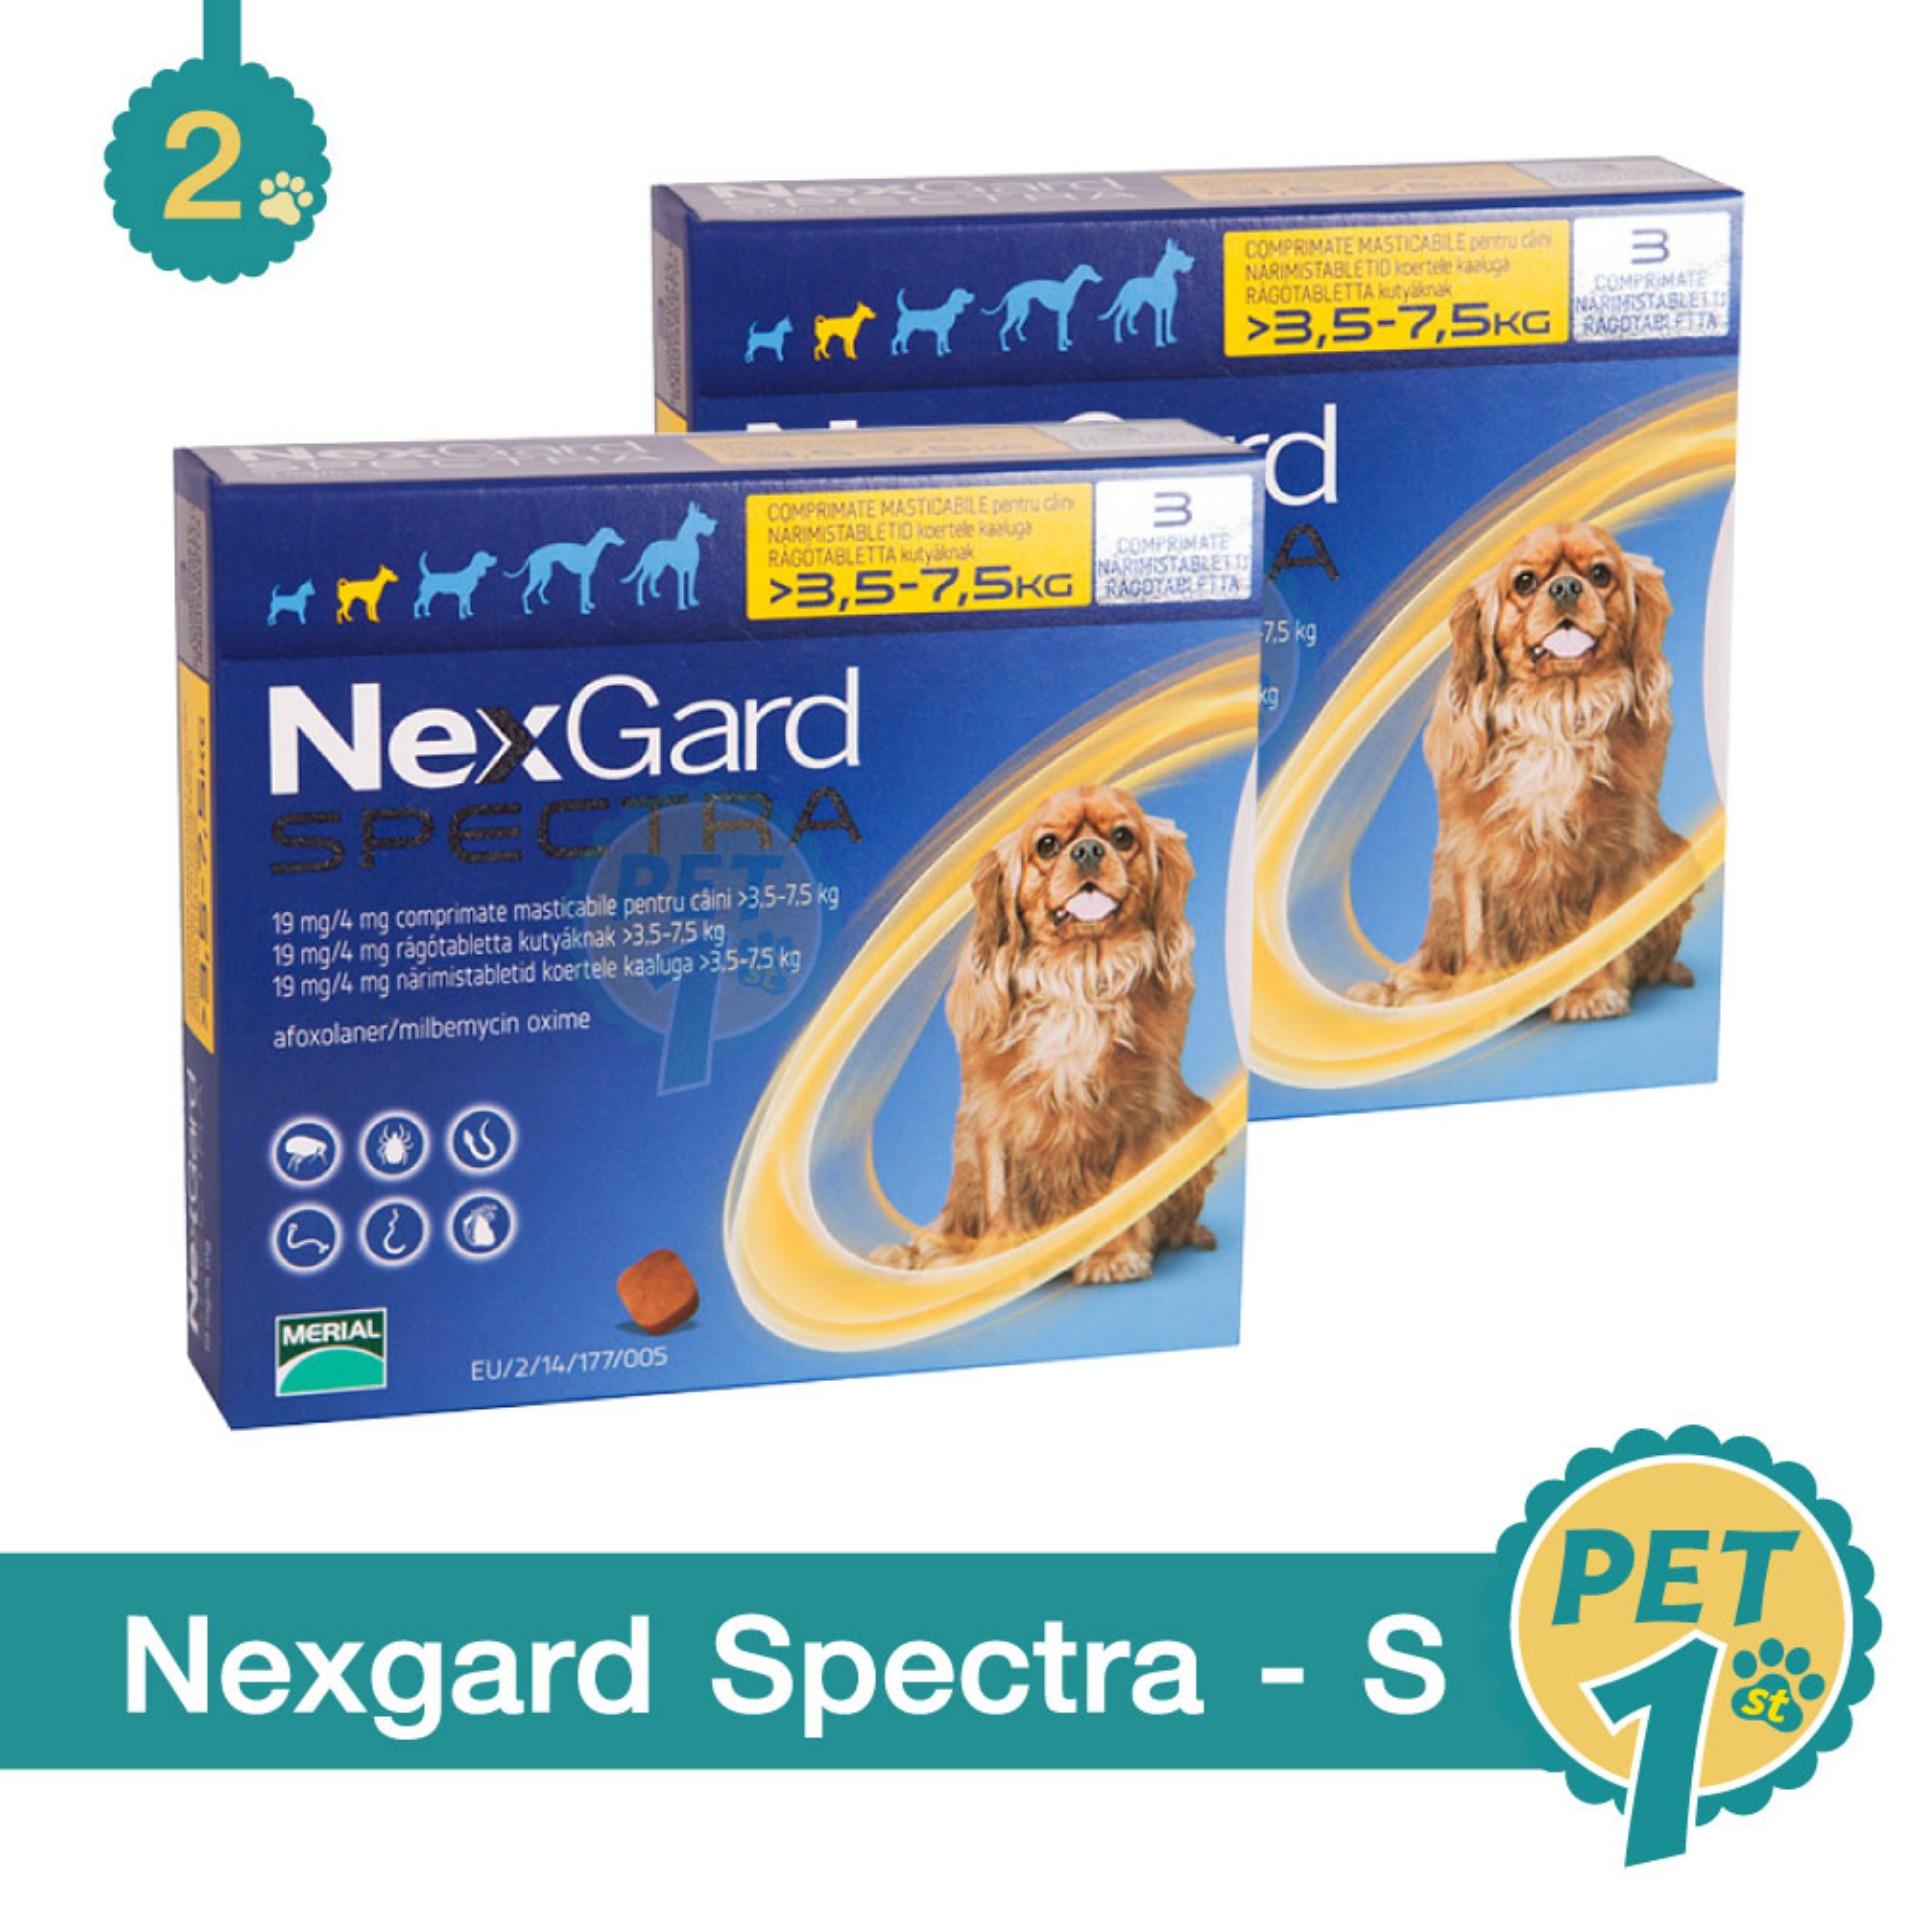 NexGard Spectra dog 3.5-7.5 kg ยากินกำจัดเห็บหมัด กันพยาธิหัวใจ ถ่ายพยาธิลำไส้ 3.5-7.5 กก. (กล่อง 3 ชิ้น) - 2 กล่อง